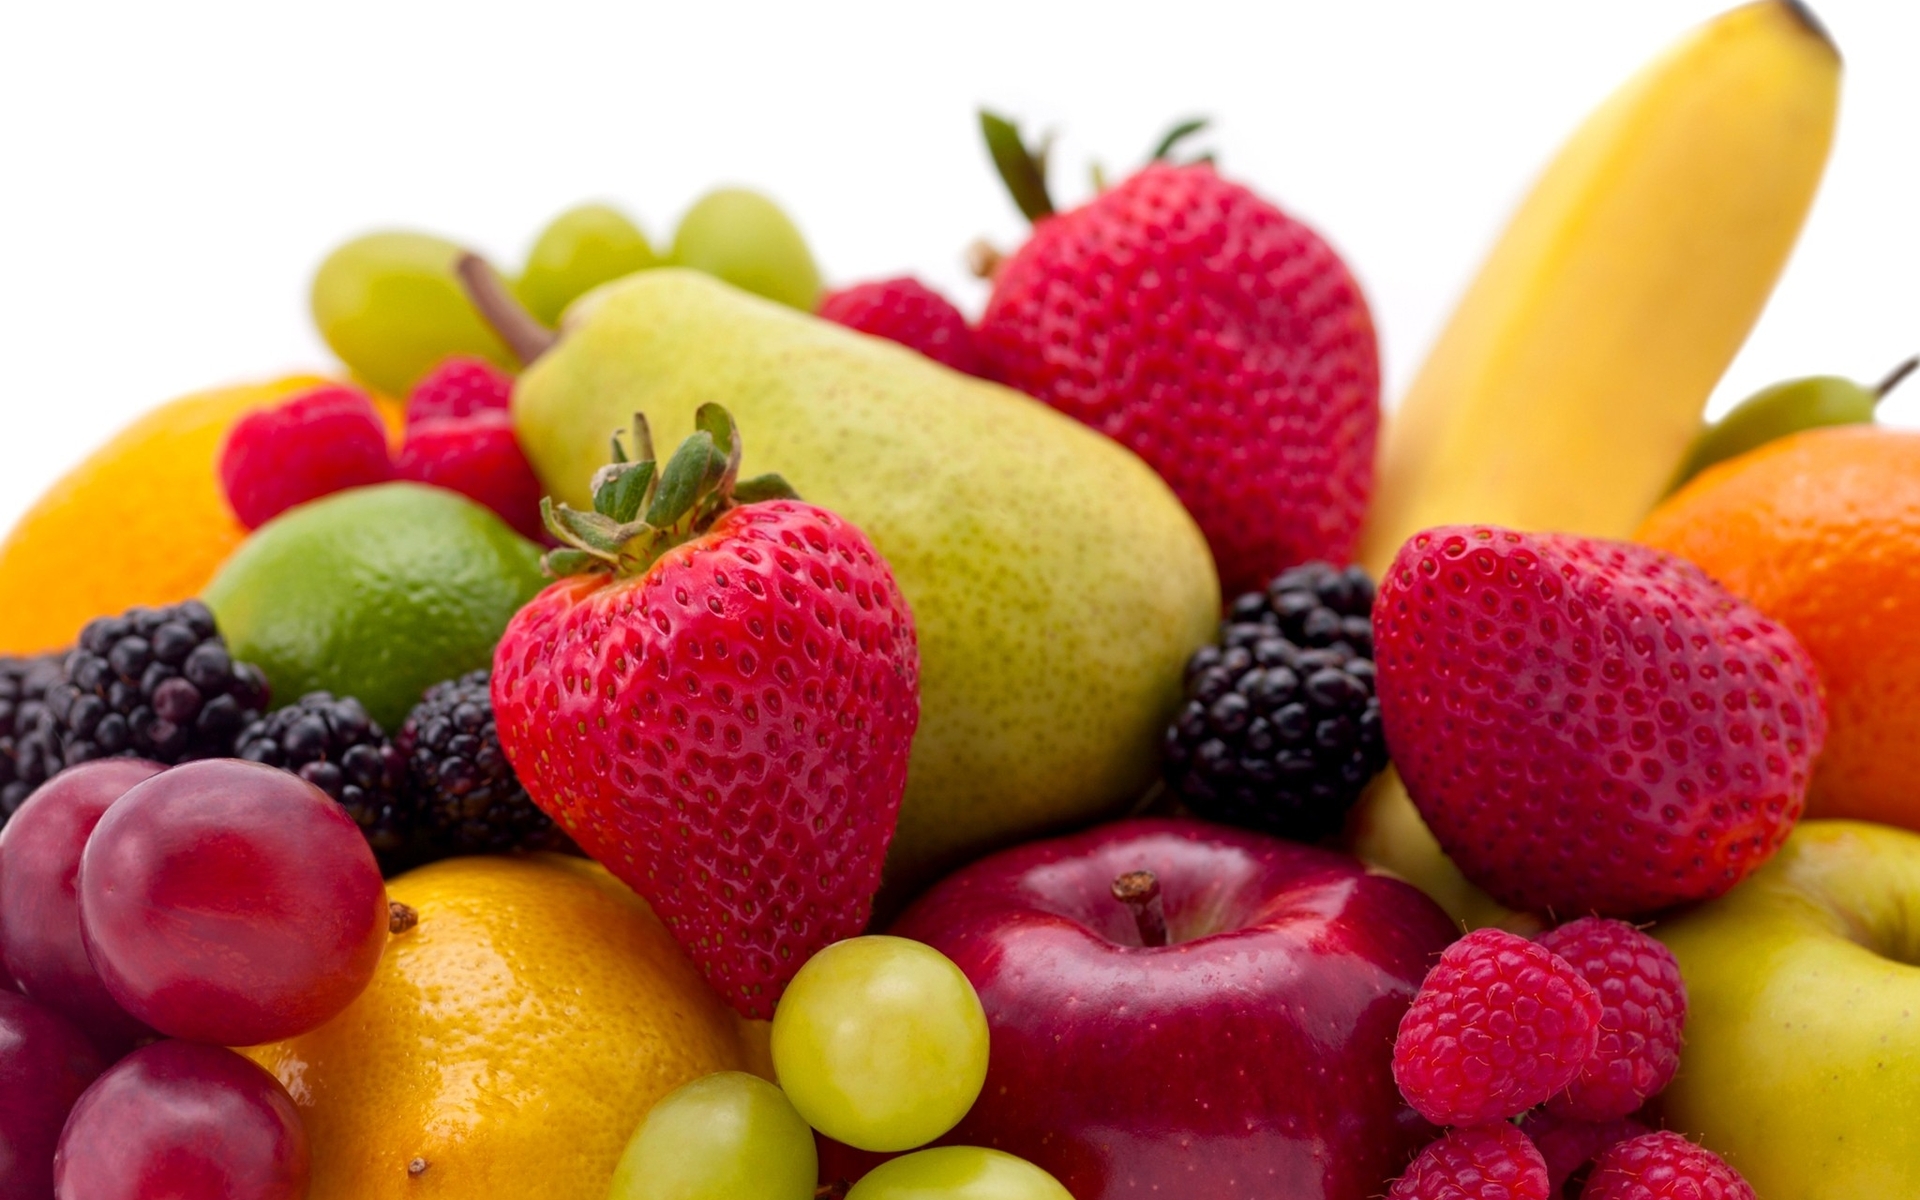 Image: Fruit, berry, strawberry, raspberry, blackberry, pear, apple, grape, banana, lemon, lime, orange